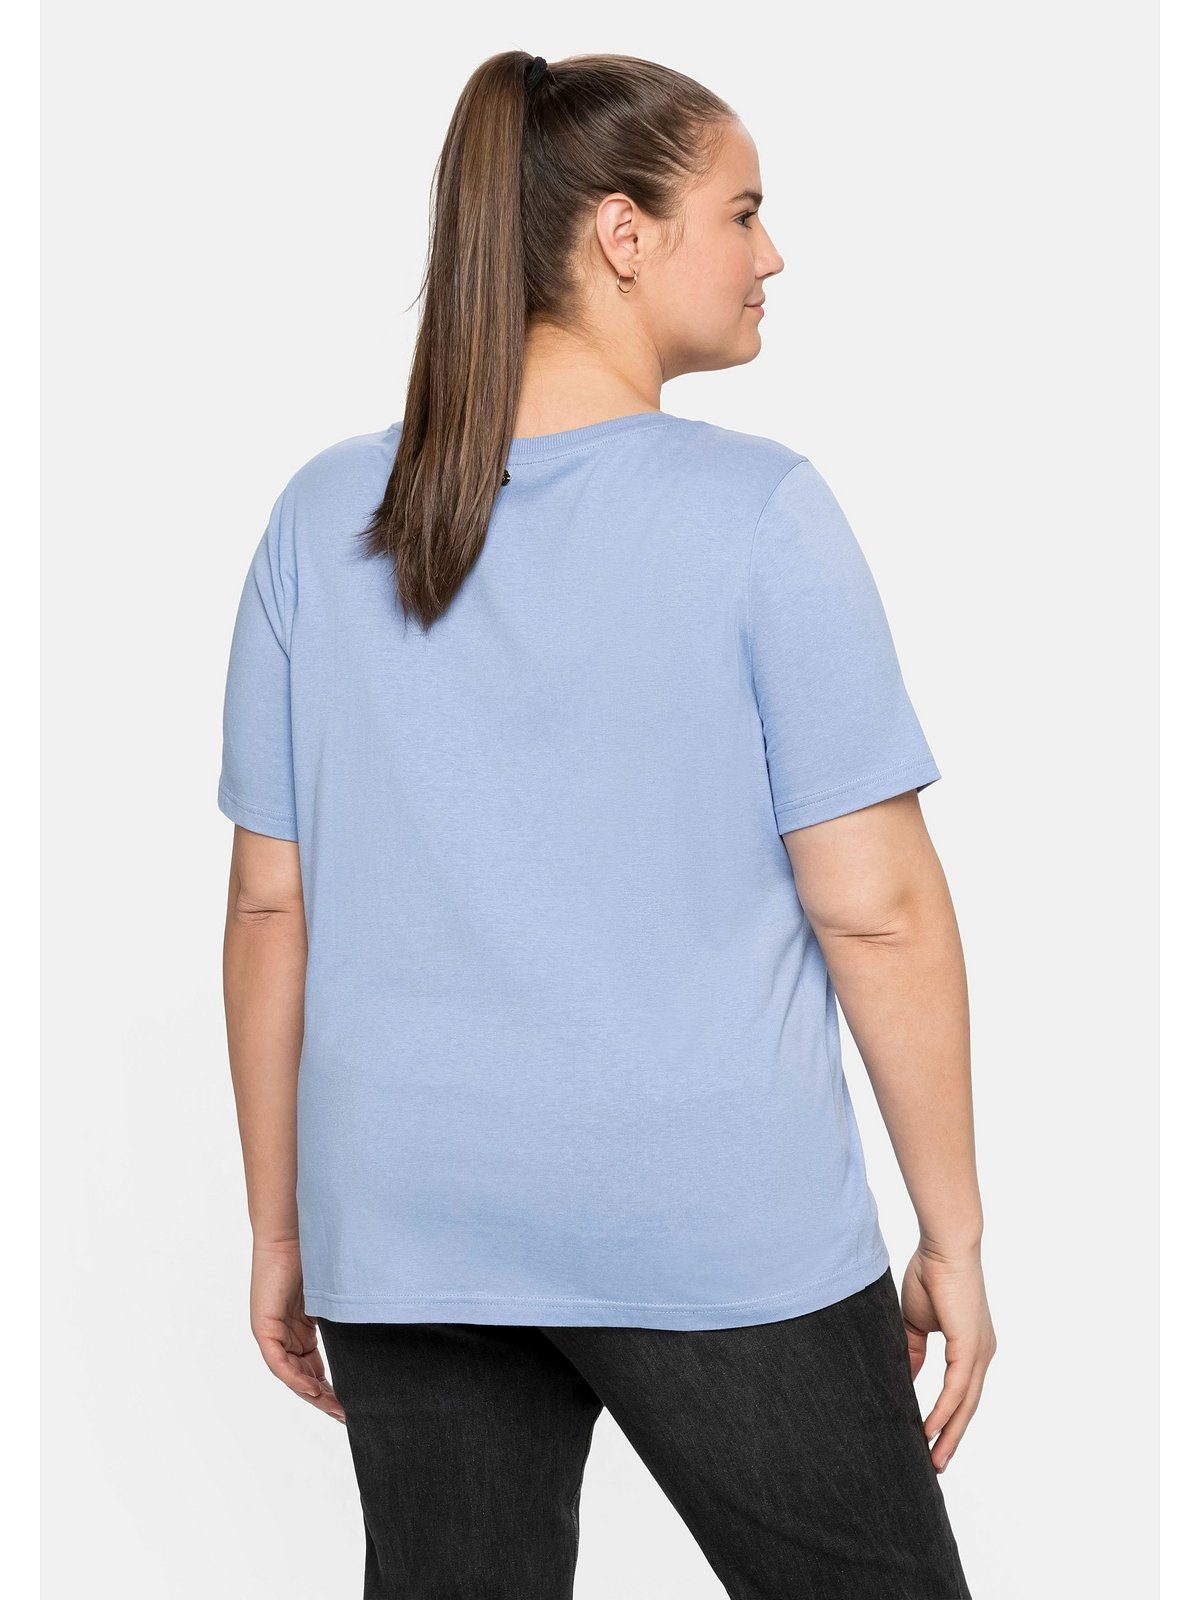 Sheego T-Shirt Große Größen schimmerndem und Glitzersteinen mit Frontdruck